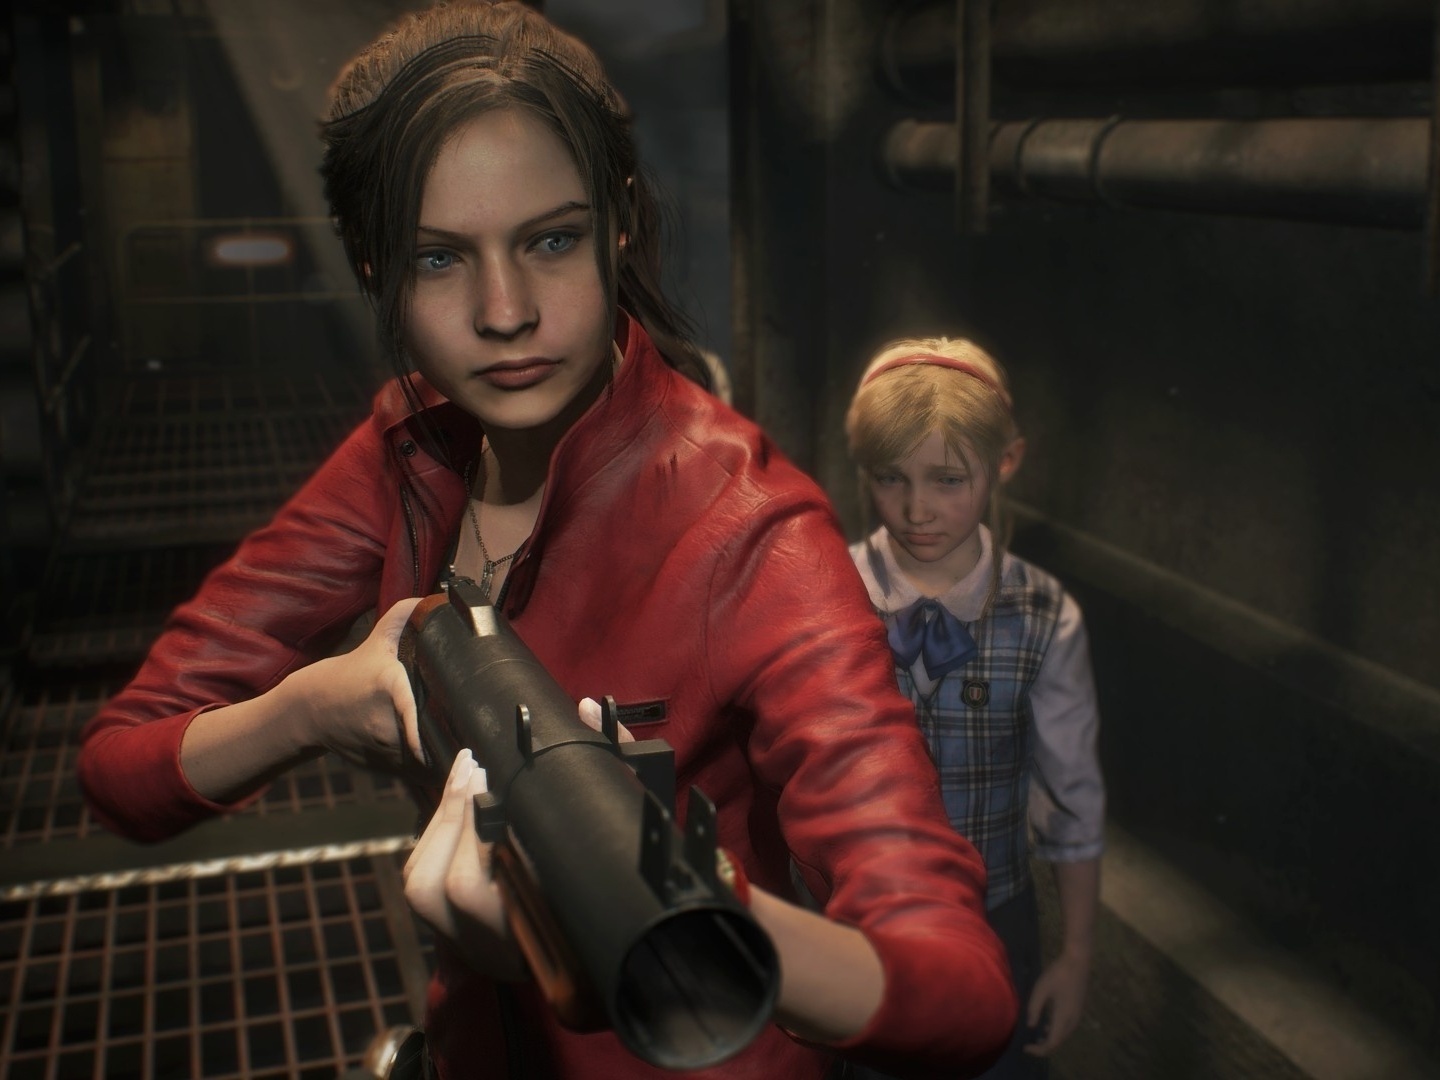 Demo de Resident Evil 4 encontra-se disponível em todas as plataformas